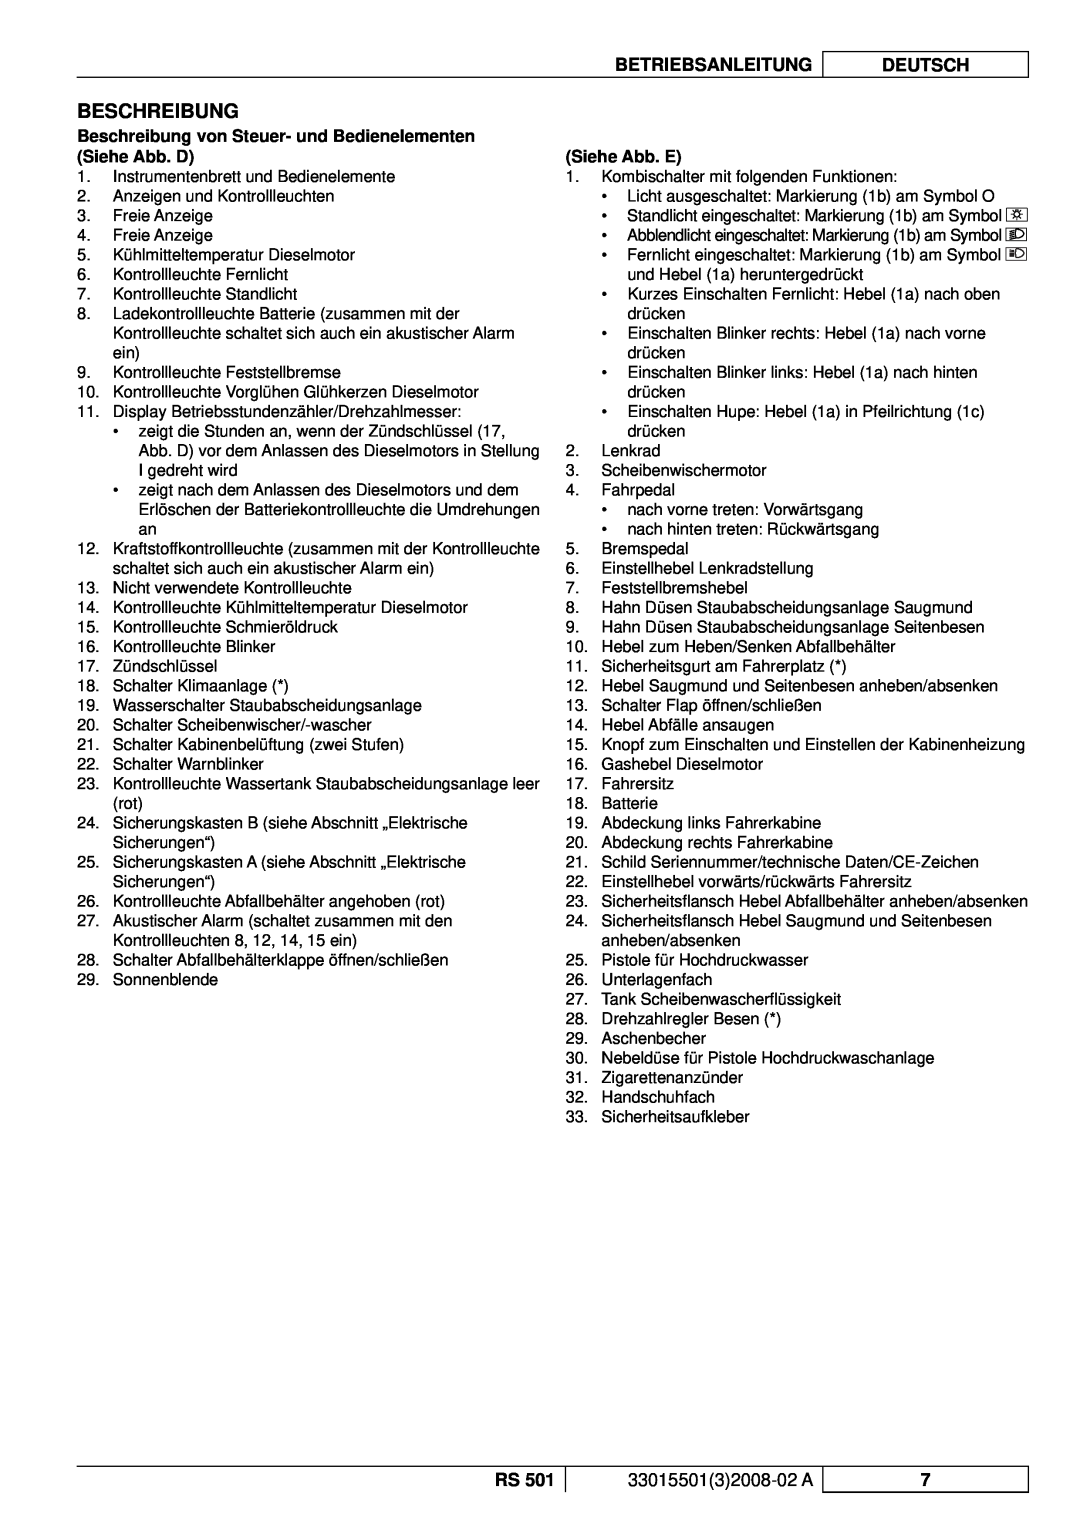 Nilfisk-ALTO RS 501 manuel dutilisation Beschreibung, Siehe Abb. E, Betriebsanleitung, Deutsch, 3301550132008-02A 